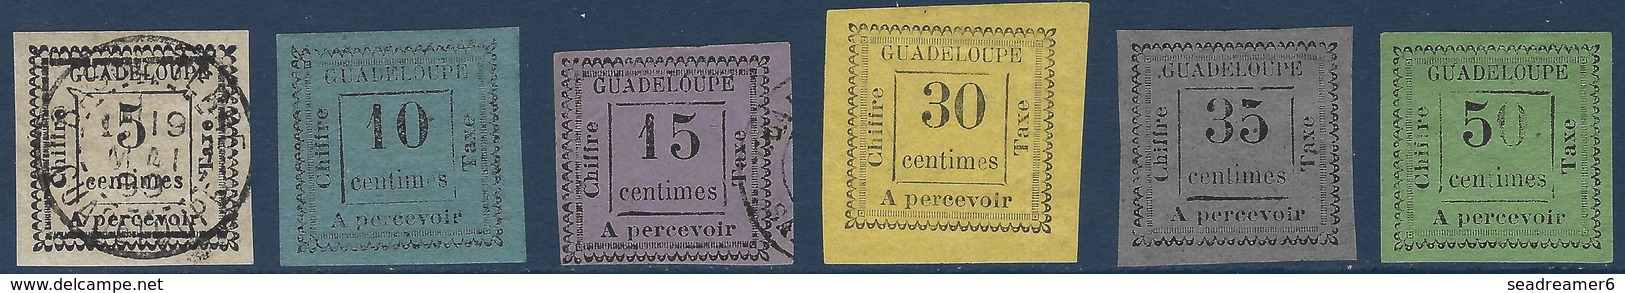 France Colonies Guadeloupe Taxe N°6,7,8,10,11 & 12 Neufs Et Oblitérés Plutot Tres Belle Qualité !! - Postage Due